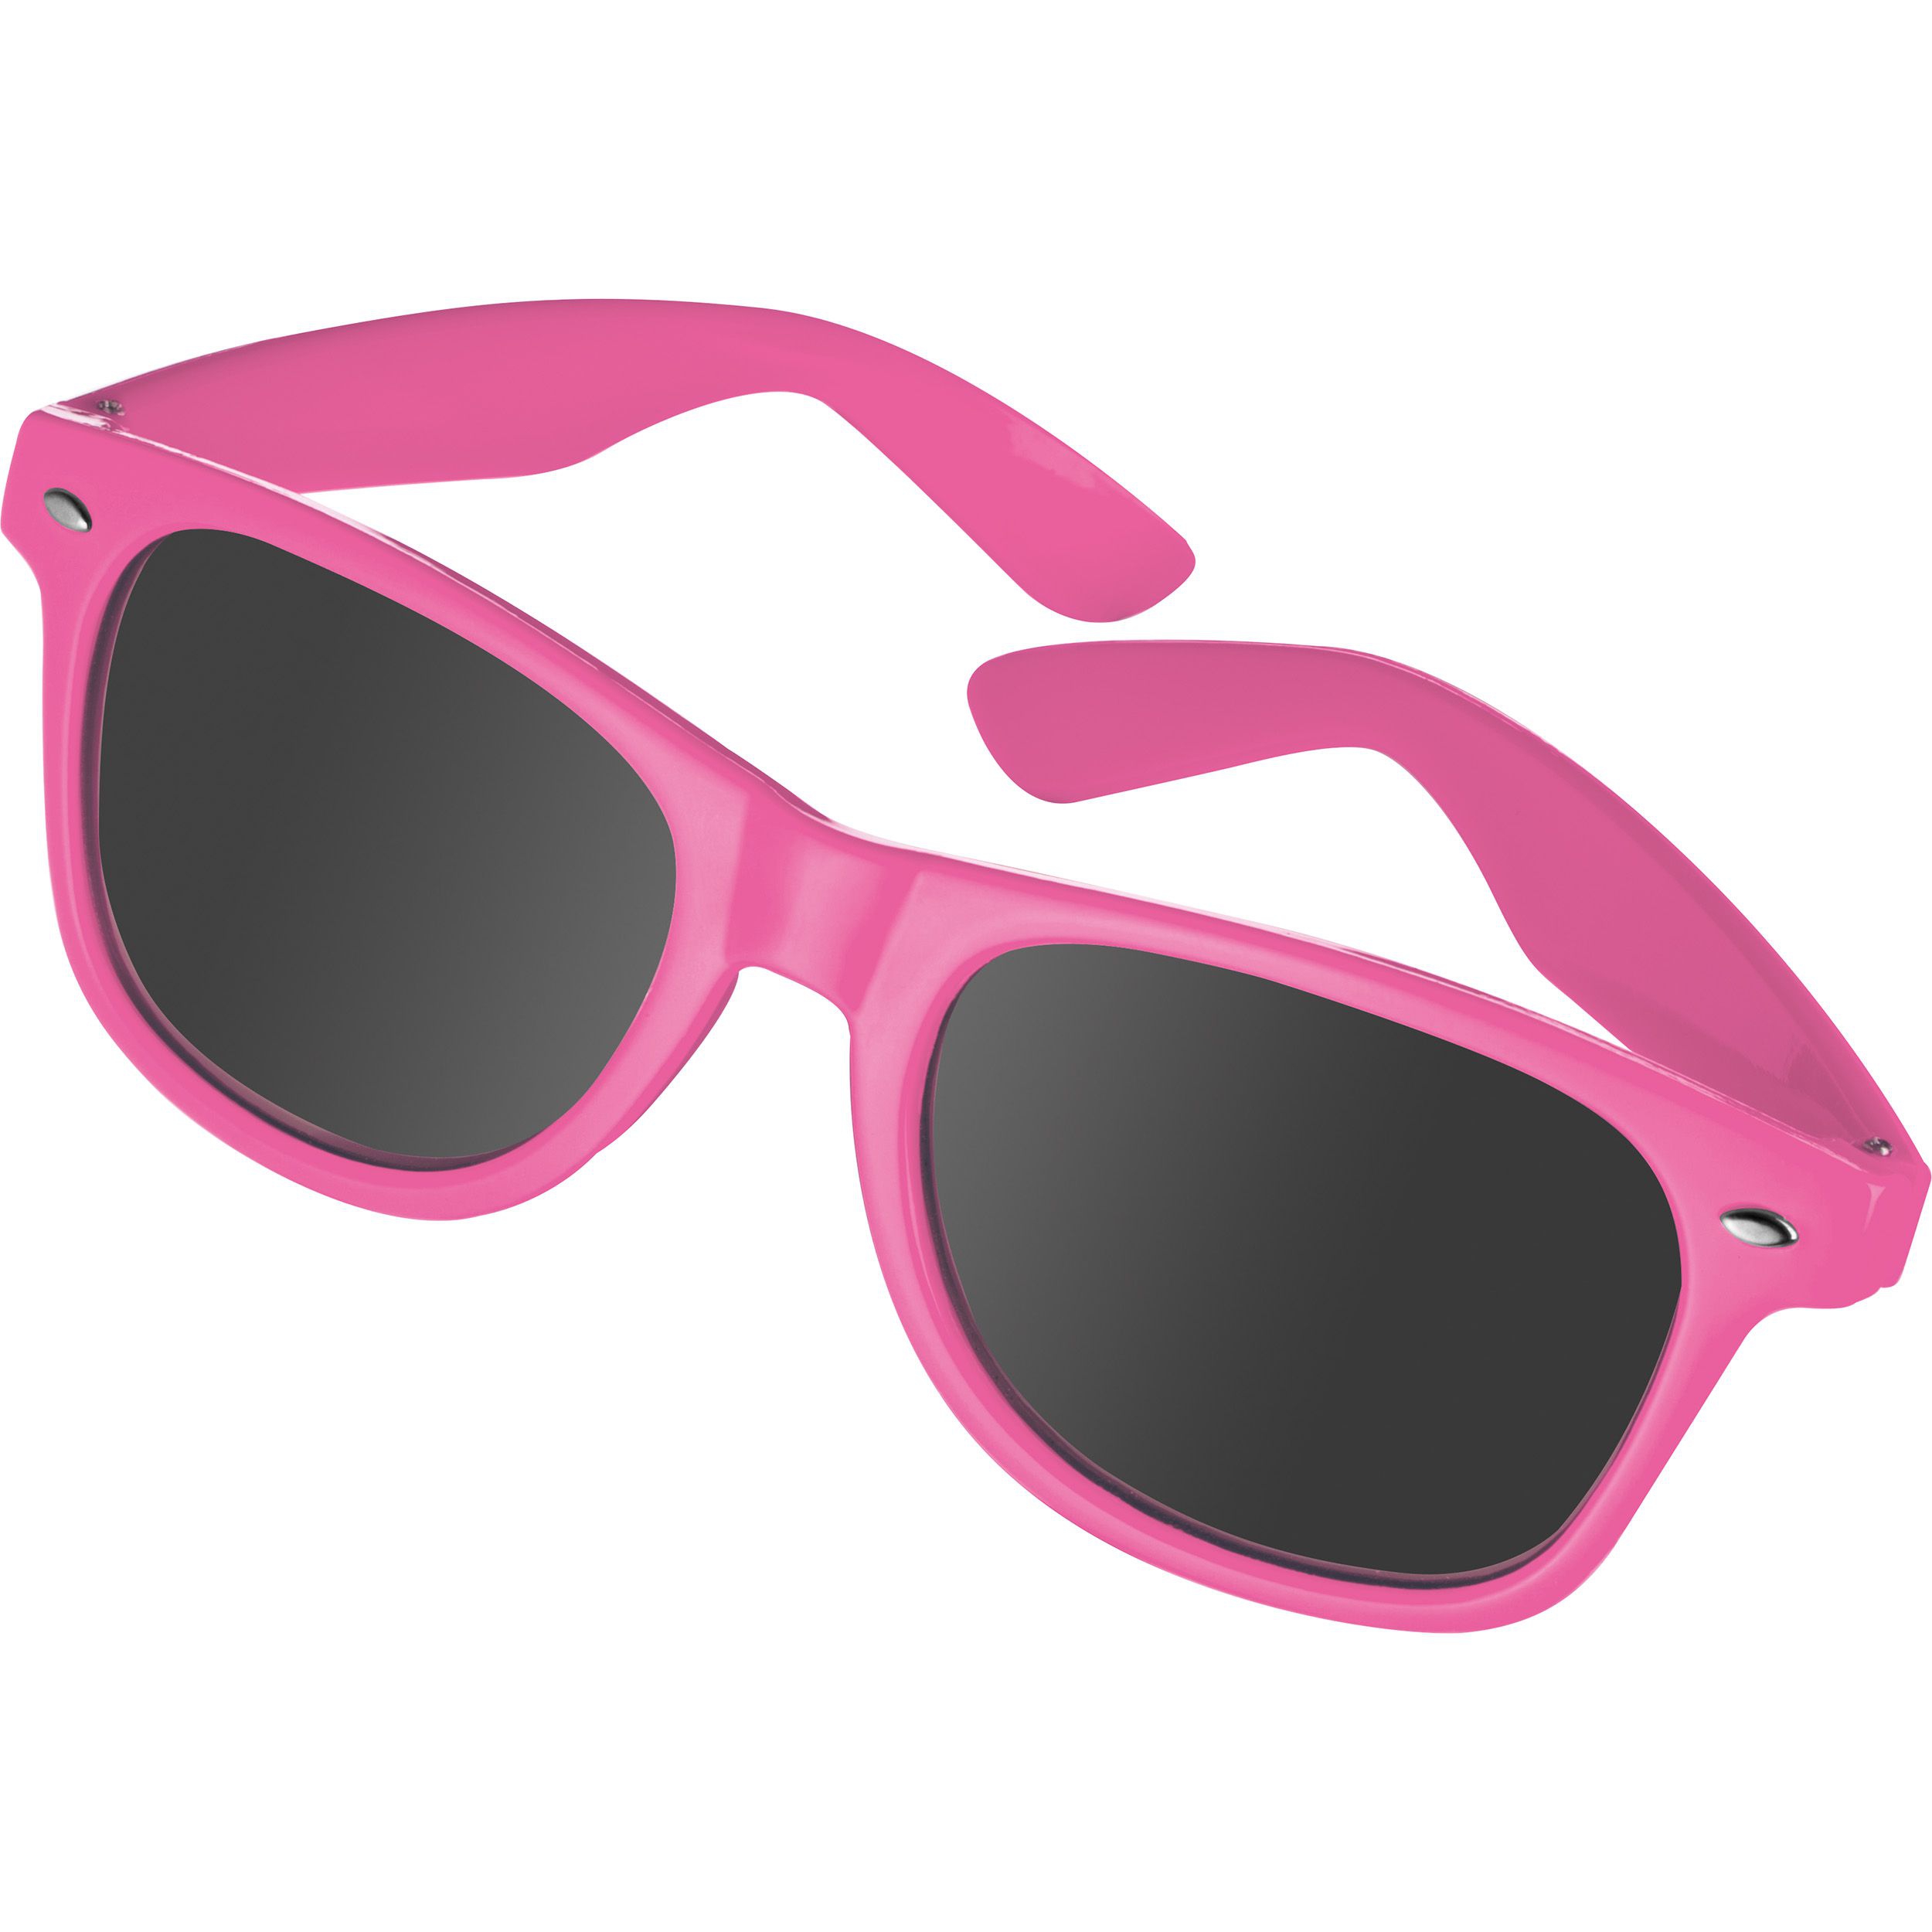 Sonnenbrille aus Kunststoff im "Nerdlook", UV 400 Schutz, pink